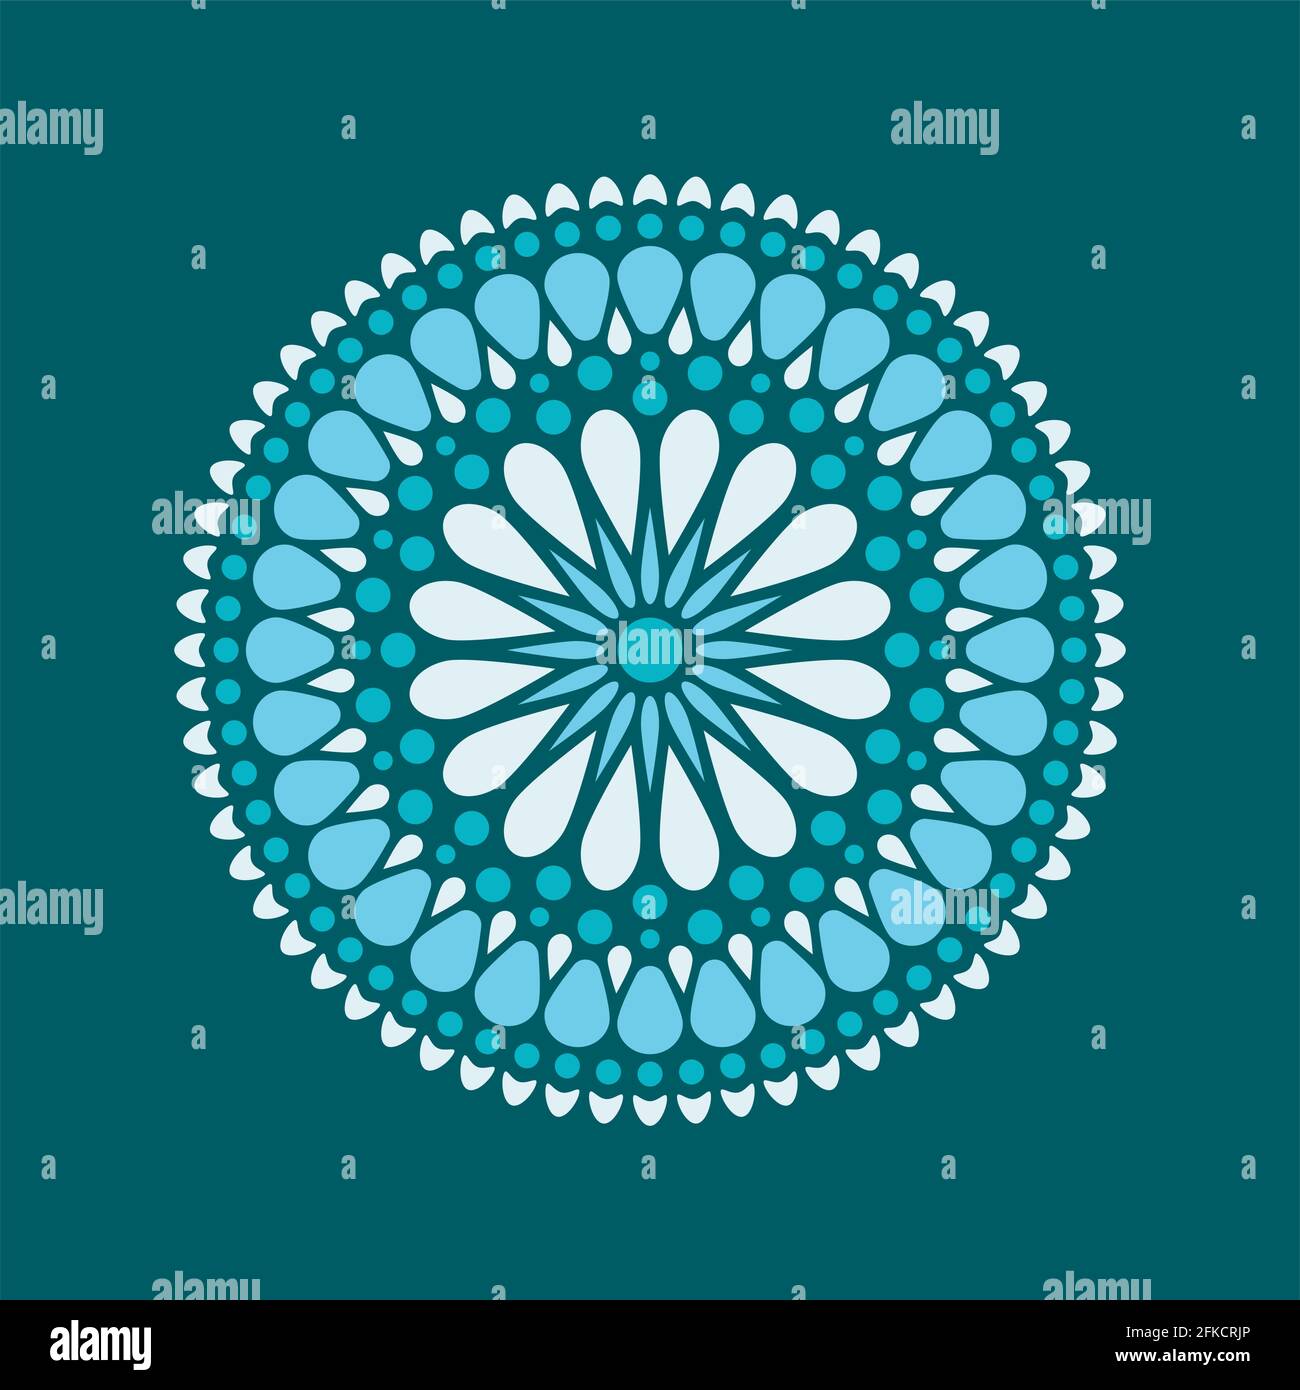 Monochrome Dot-Malerei trifft auf Mandalas. Aborigines Stil der Punktmalerei und Kraft des Mandalas. Dekorative Blume Stock Vektor